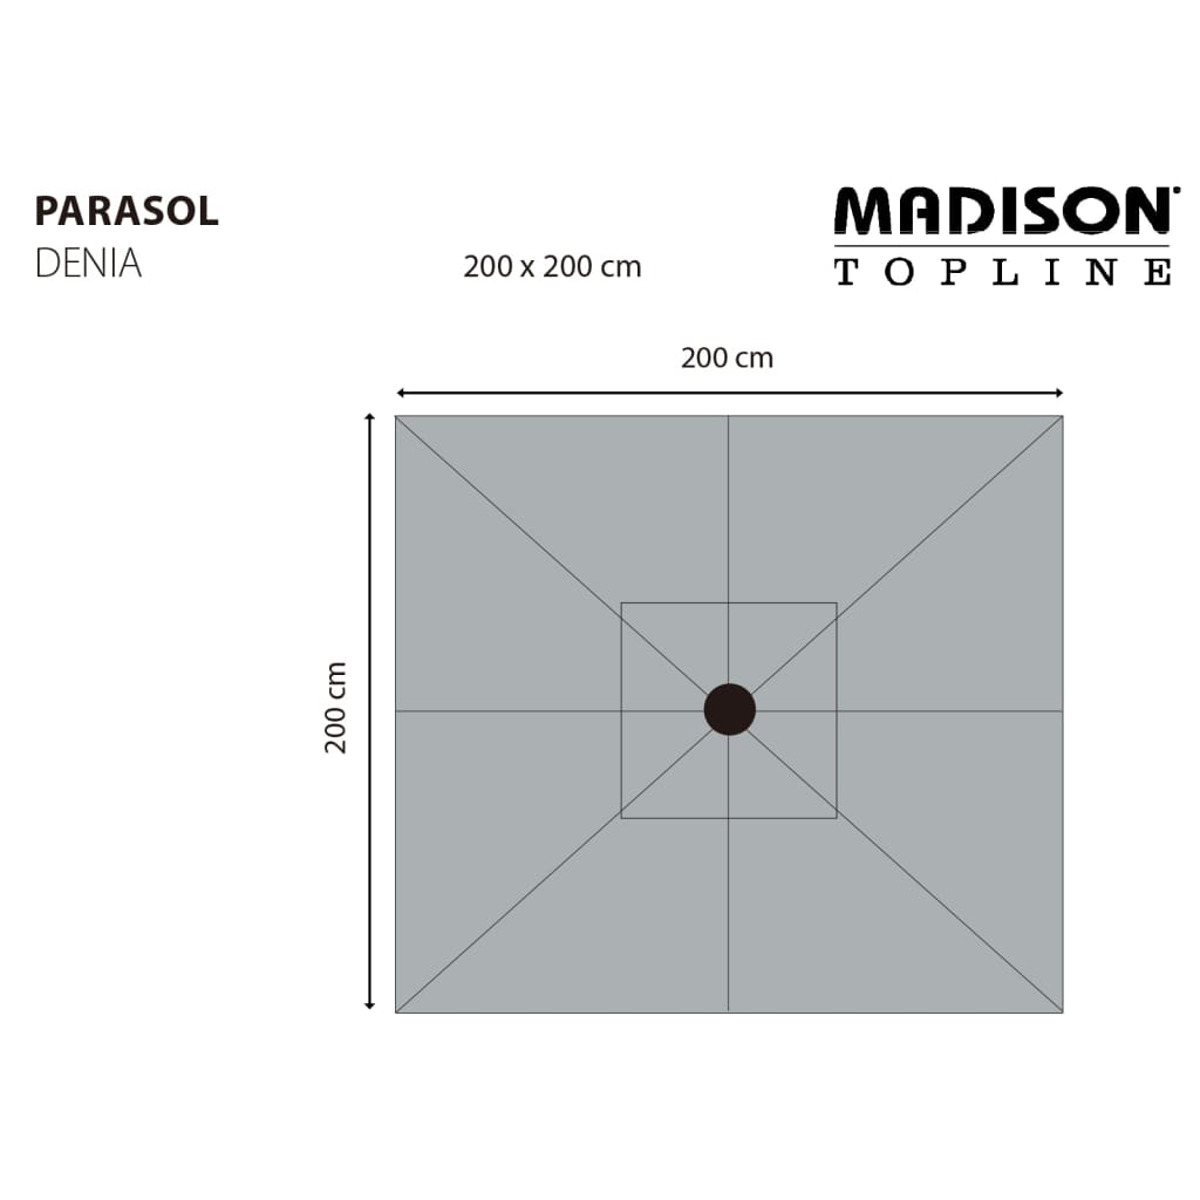 MADISON 447150 Sonnenschirm, Grün